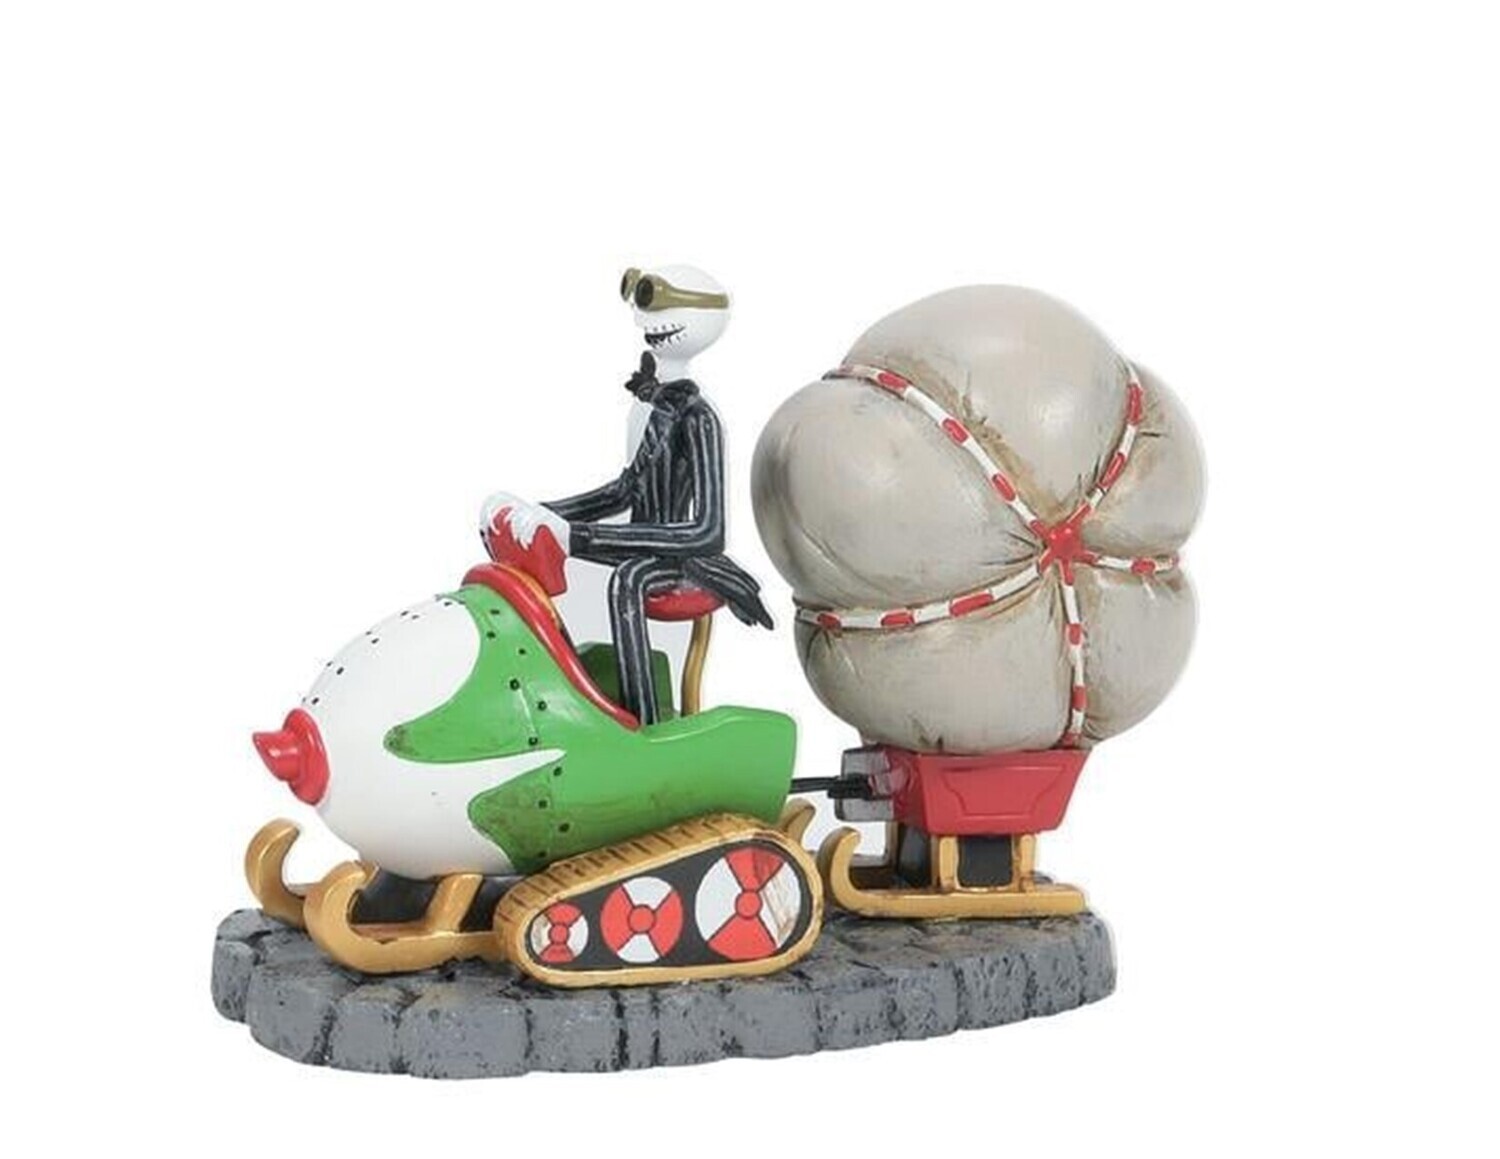 Department 56 Nightmare Before Christmas "Jack Brings Christmas Home" Figurine (6007723)